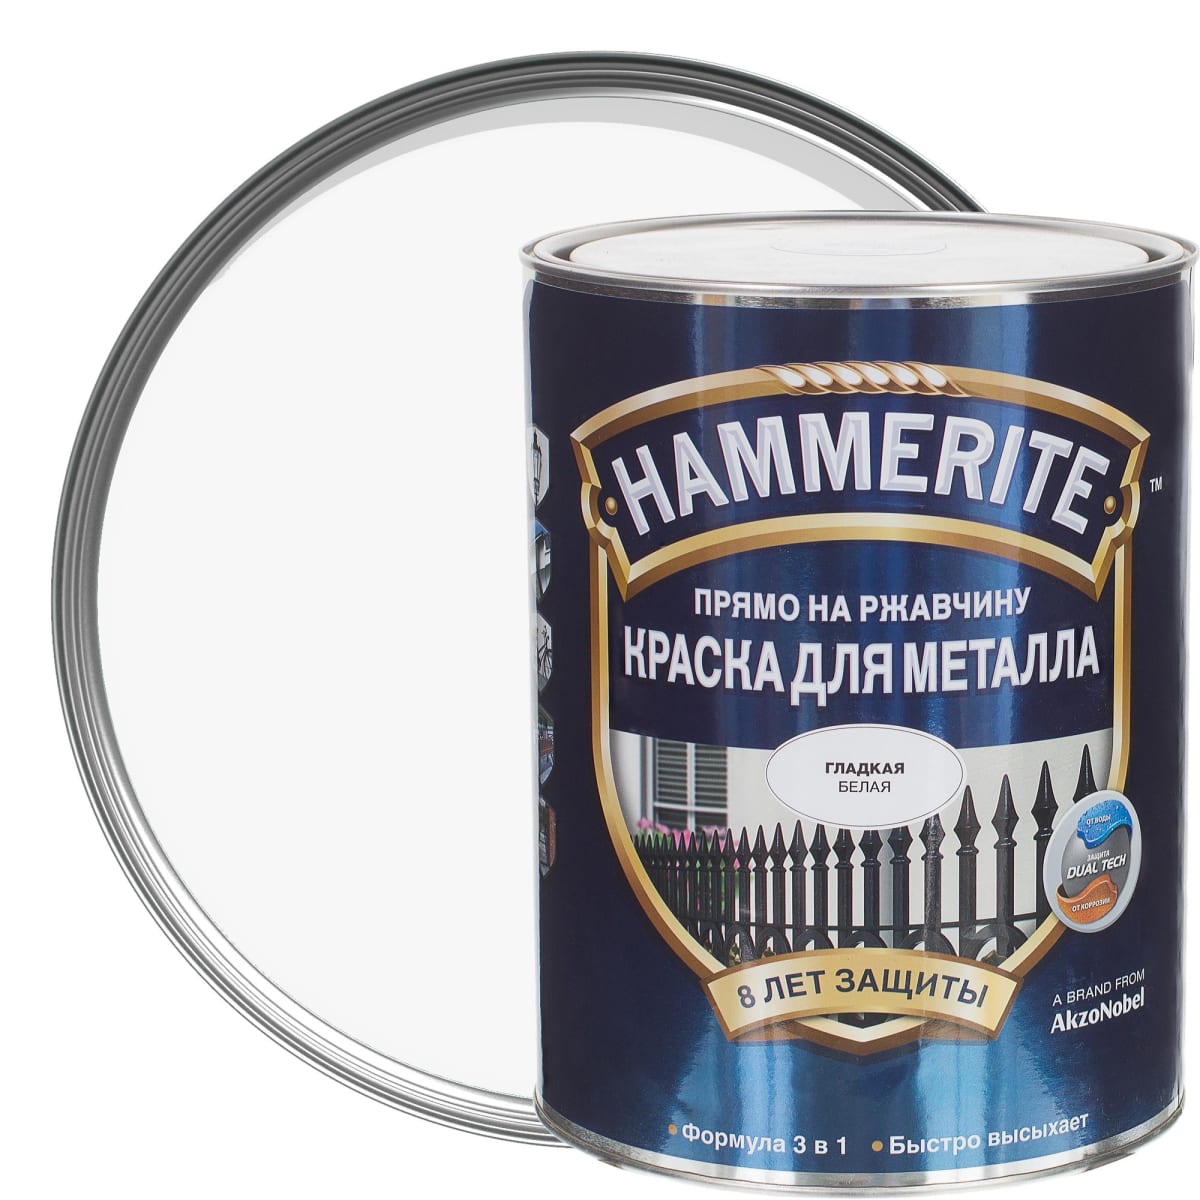 Купить краску по металлу и ржавчине. Hammerite smooth гладкая эмаль по ржавчине белая 0.75 л.. Краска алкидная Hammerite. Хаммерайт гладкая эмаль по ржавчине. Краска по ржавчине Hammerite белая гладкая 0.75 л.